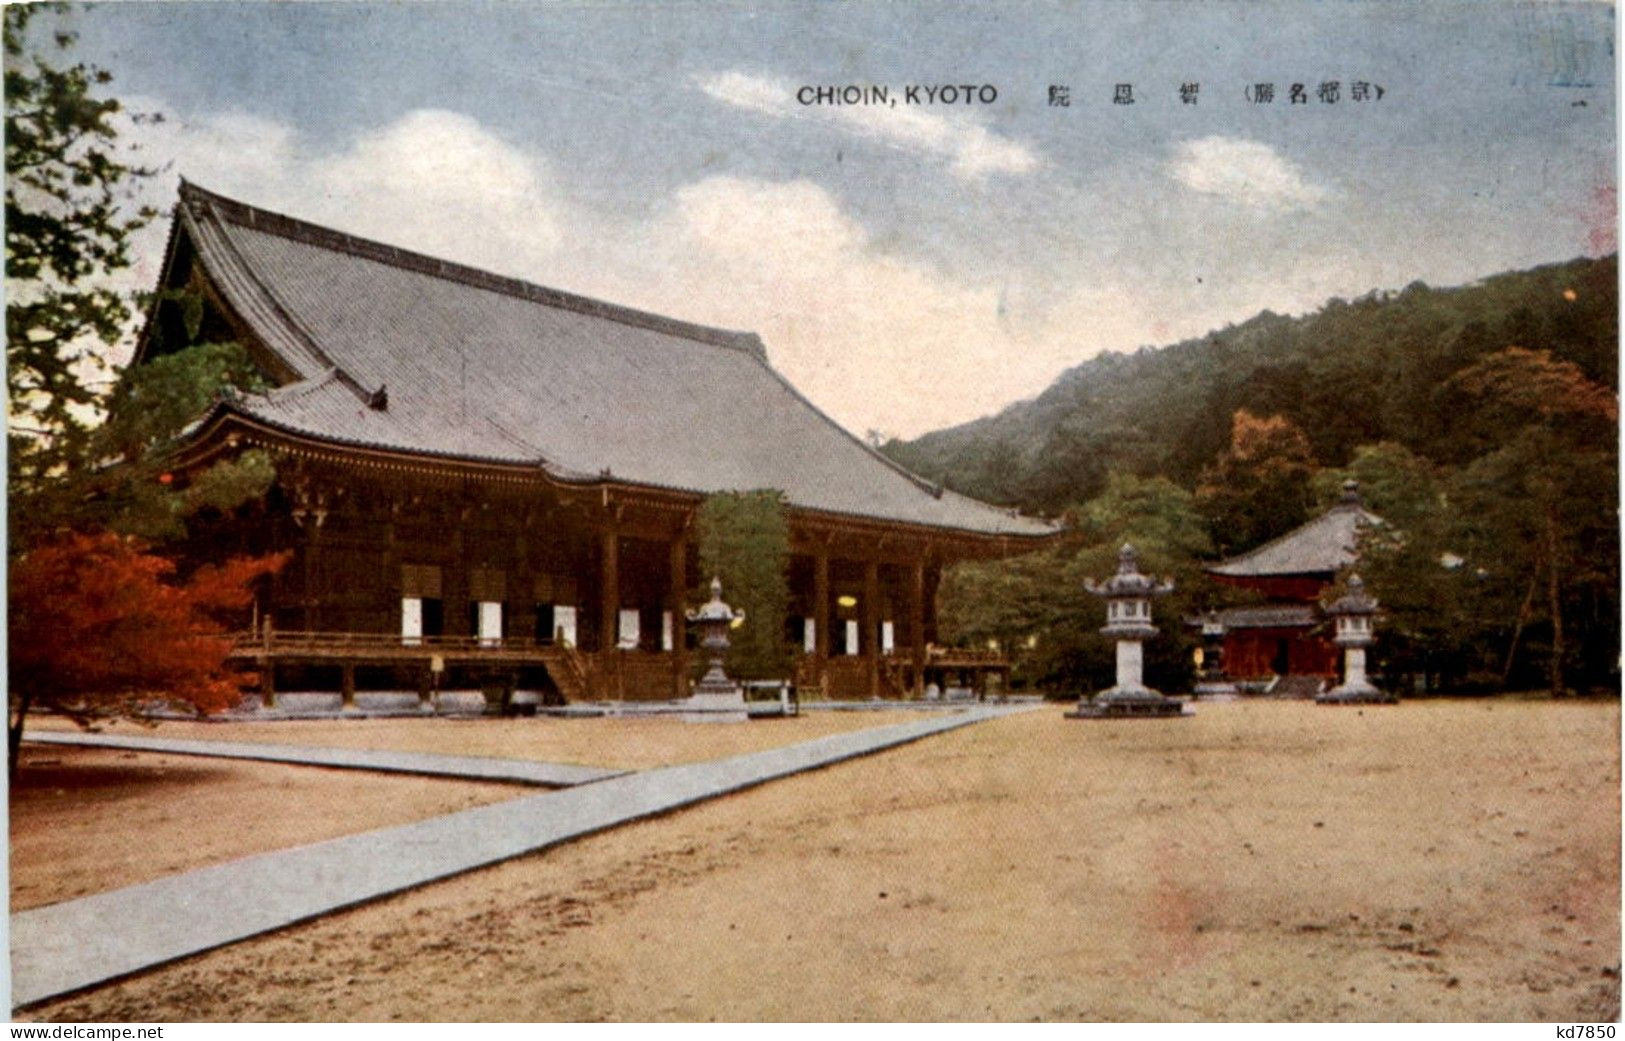 Kyoto - Chioin - Kyoto